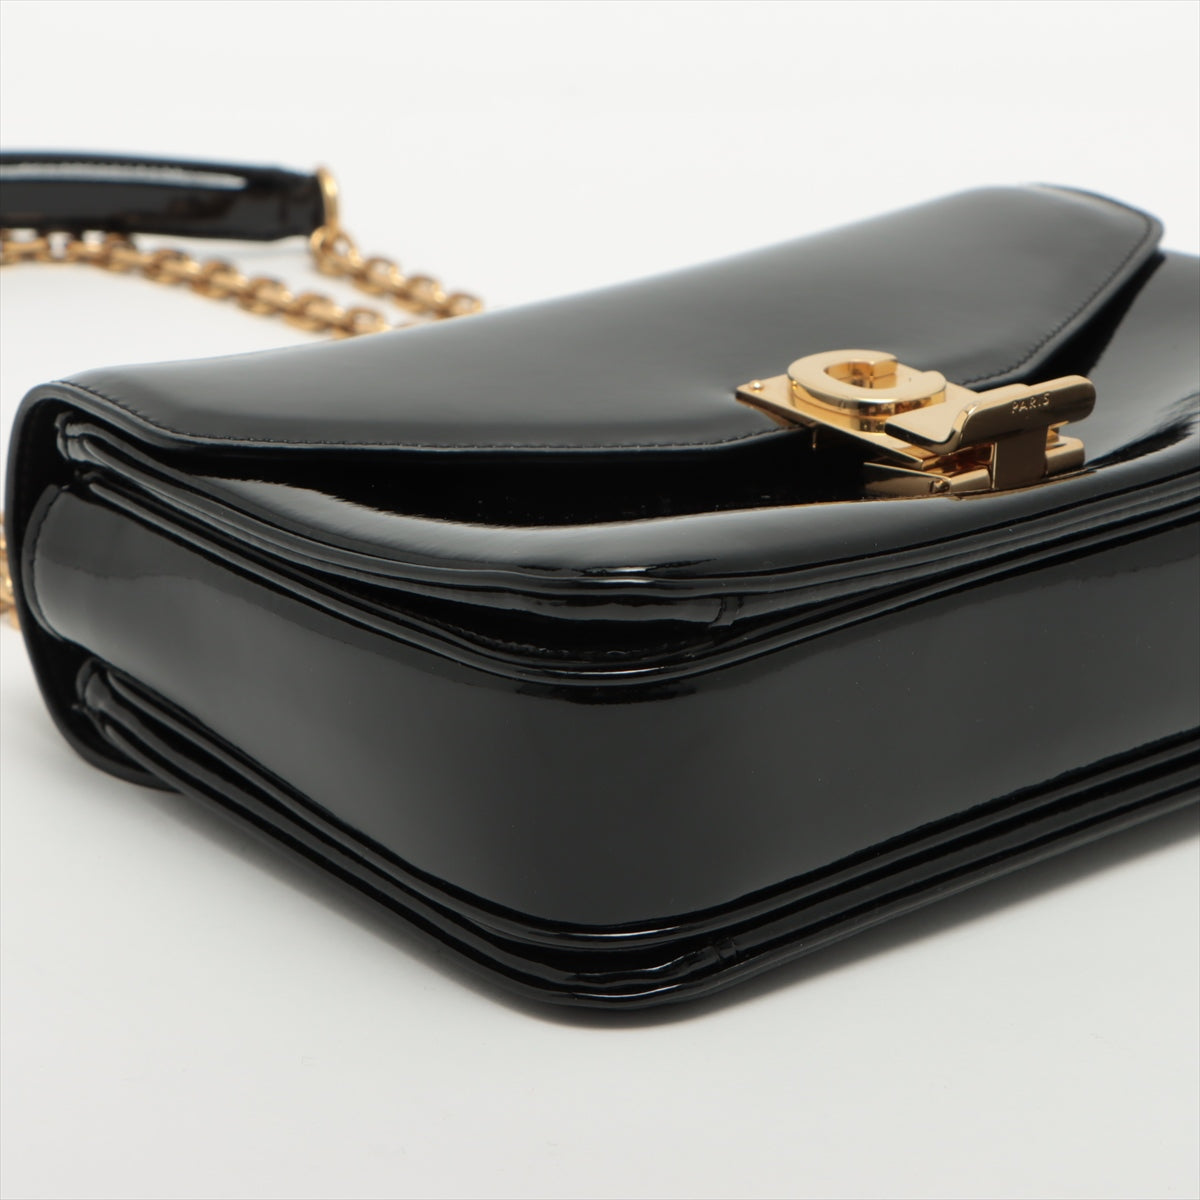 CELINE Sées Patent leather Chain shoulder bag Black